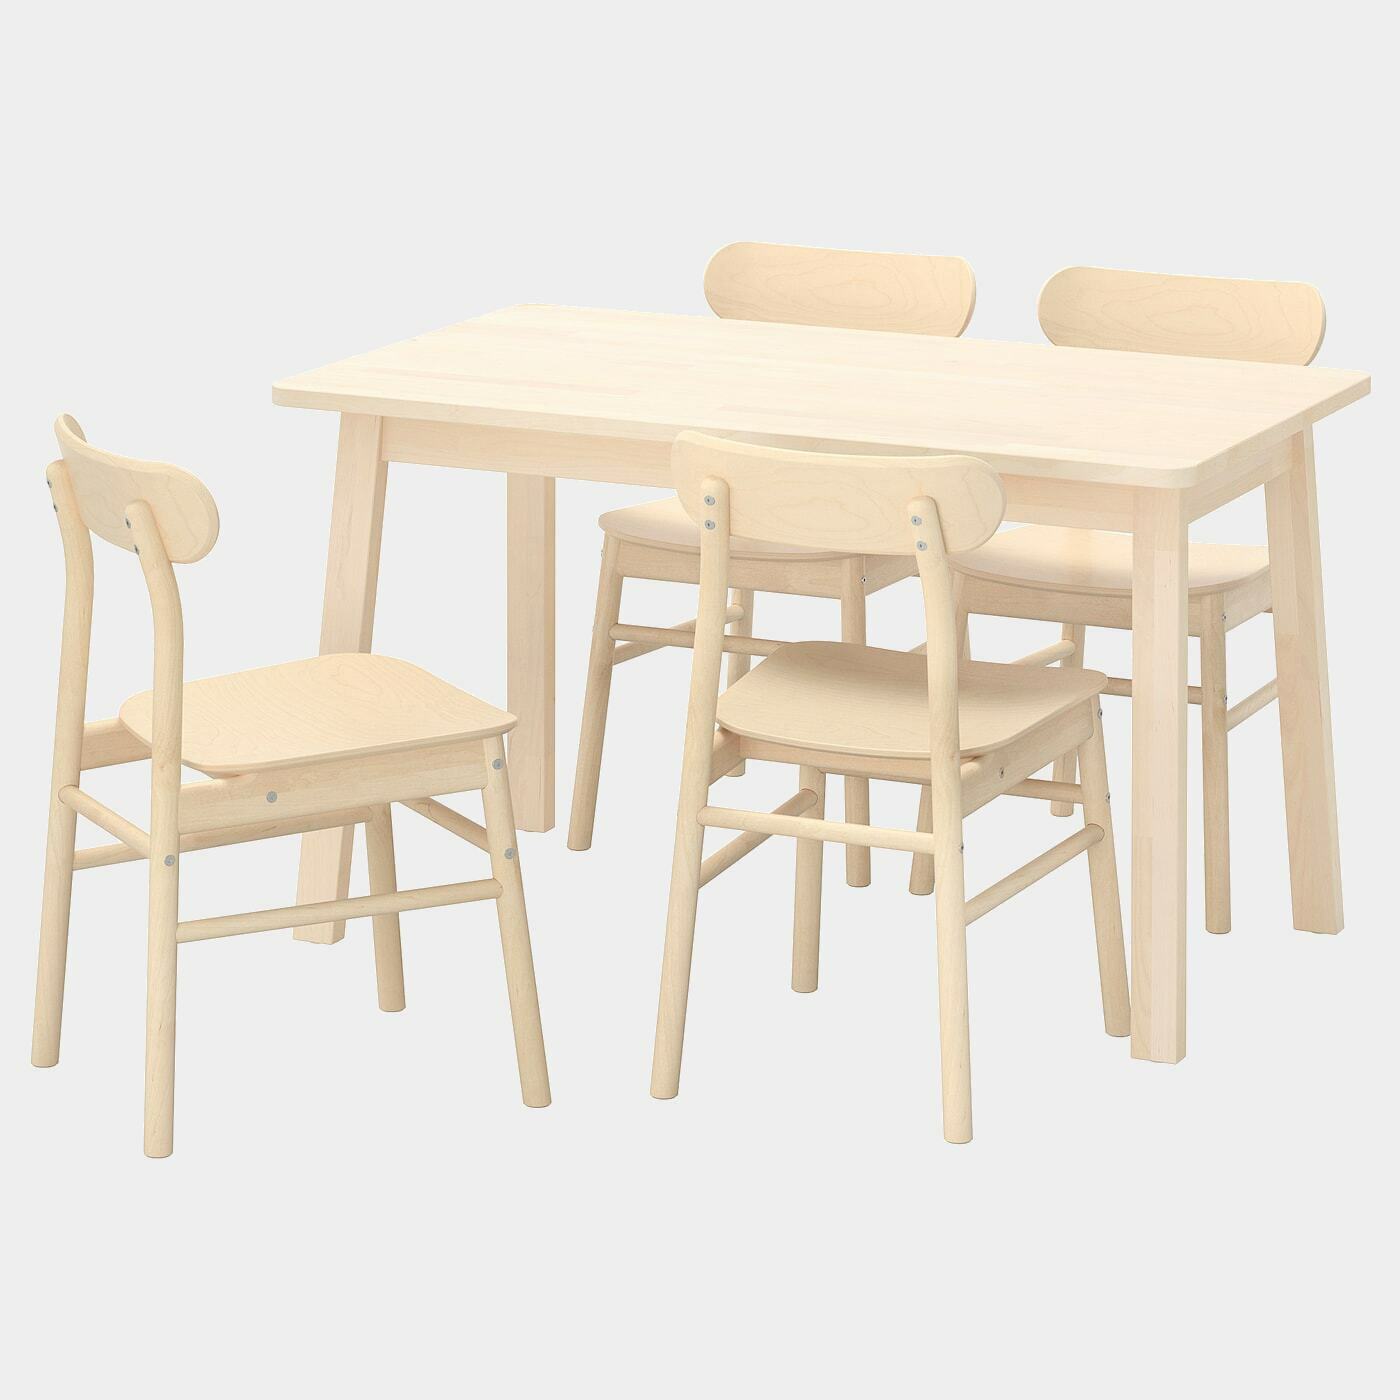 NORRÅKER / RÖNNINGE Tisch und 4 Stühle  - Essplatzgruppe - Möbel Ideen für dein Zuhause von Home Trends. Möbel Trends von Social Media Influencer für dein Skandi Zuhause.